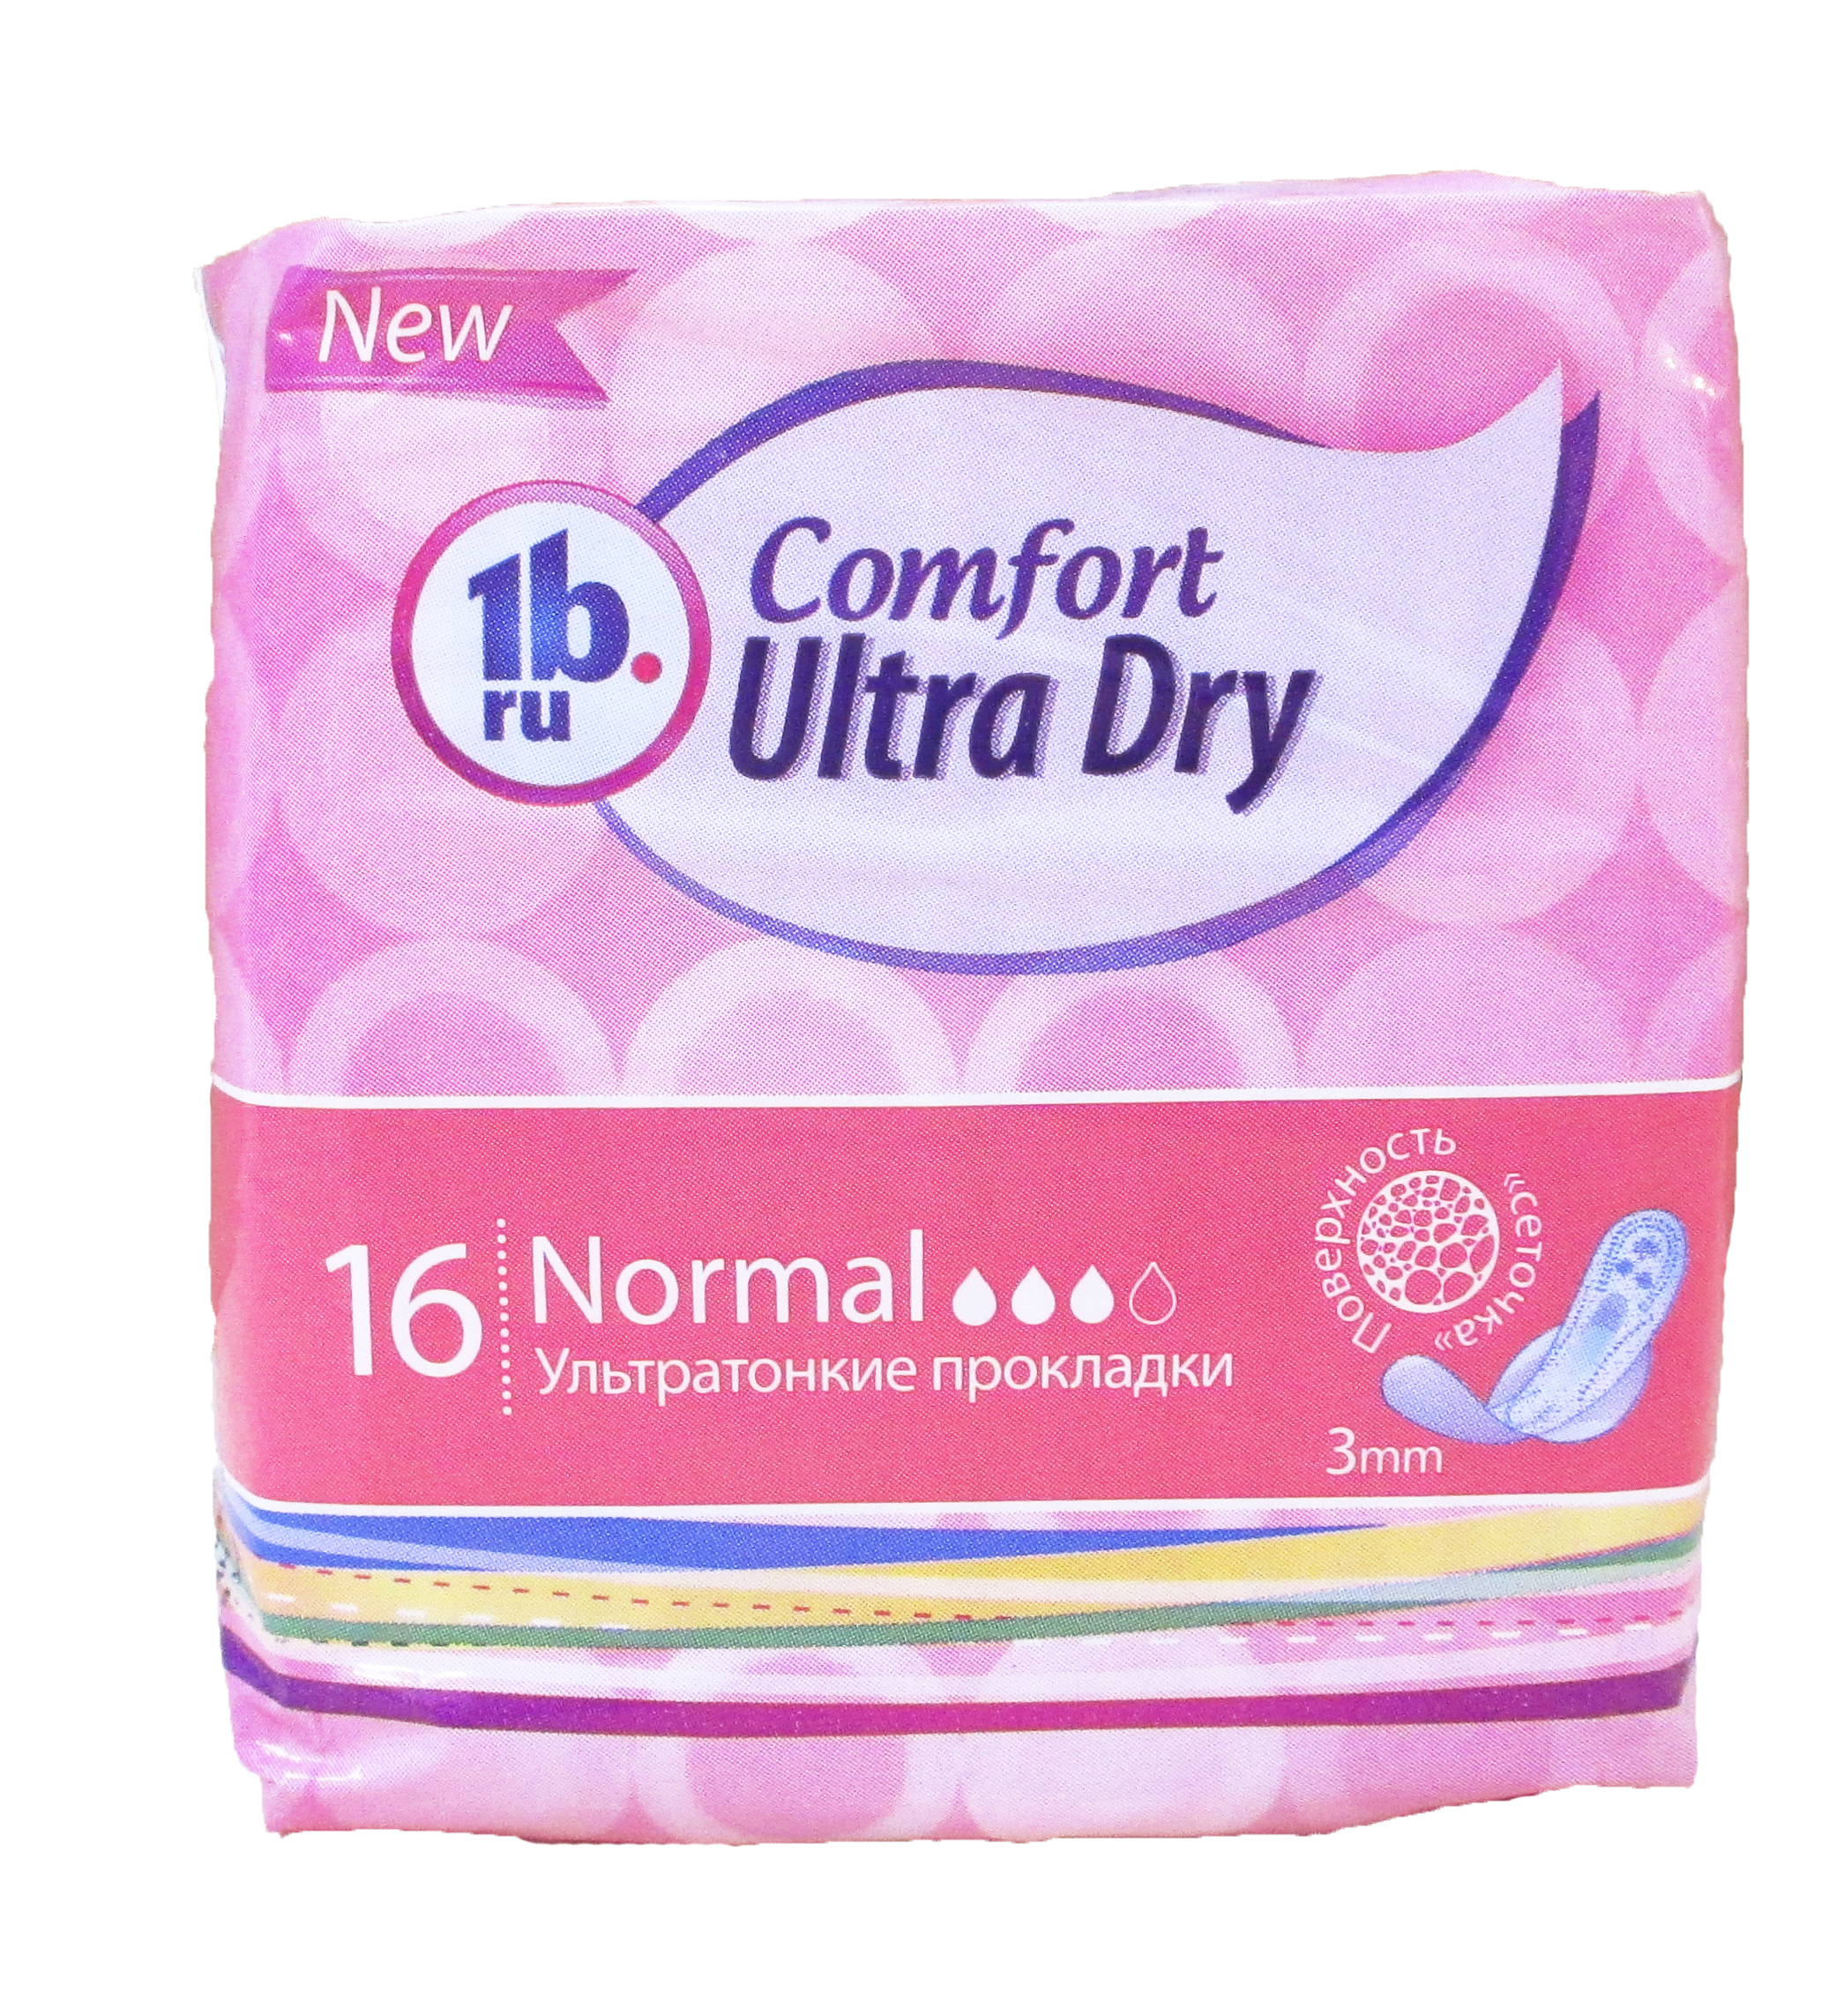 Гигиен.прокладки Comfort 1b.ru Dry ультратонкие 16шт